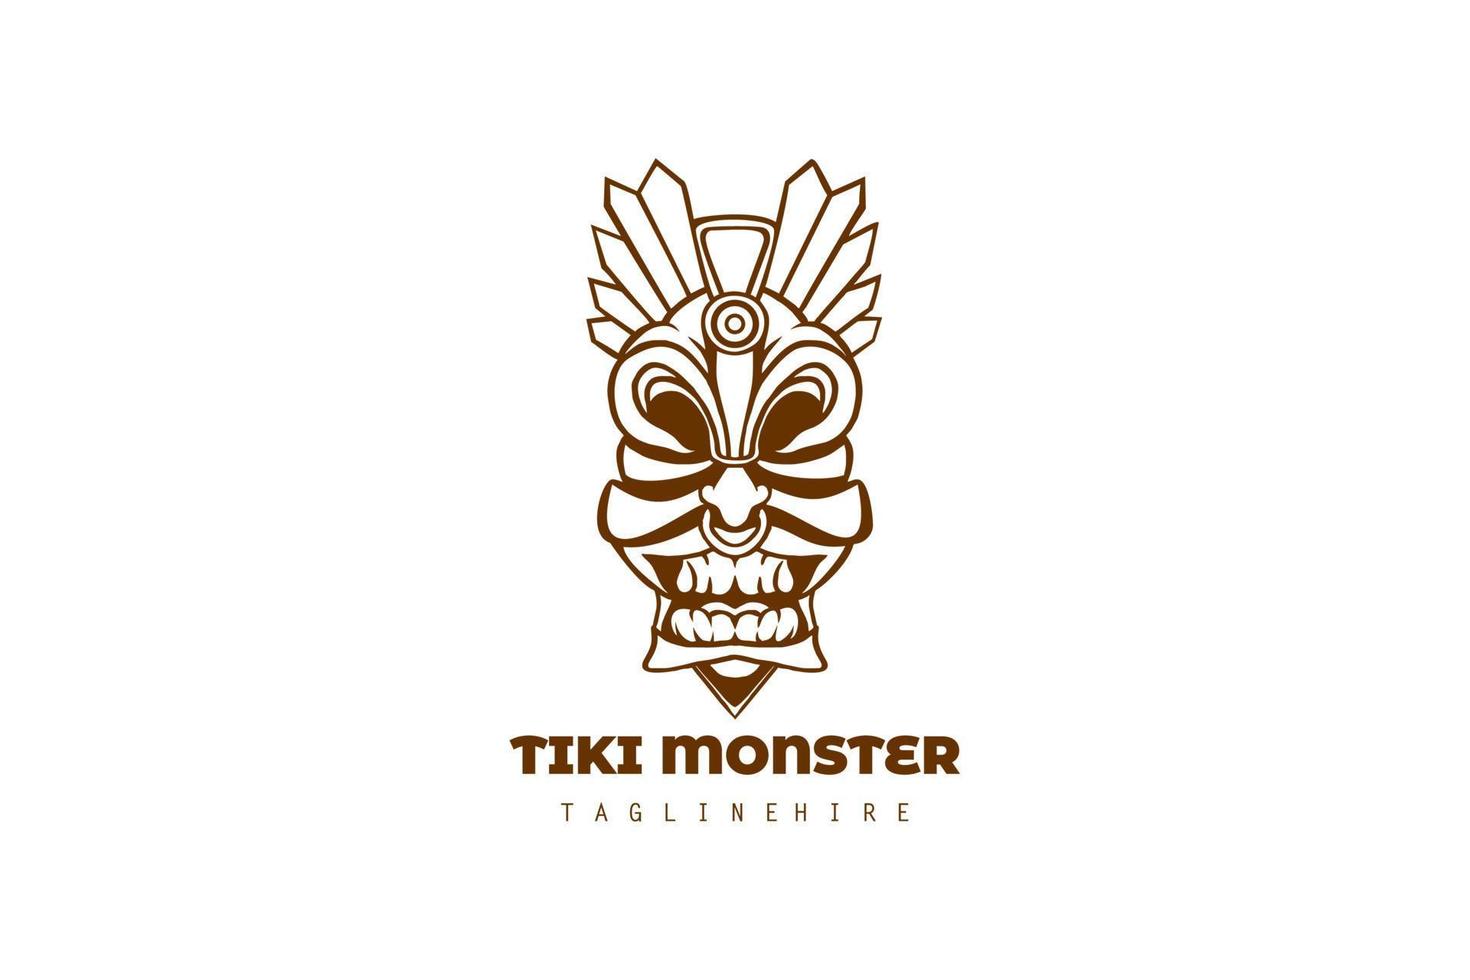 conception d'illustration de logo de monstre tiki brun isolée sur fond blanc vecteur